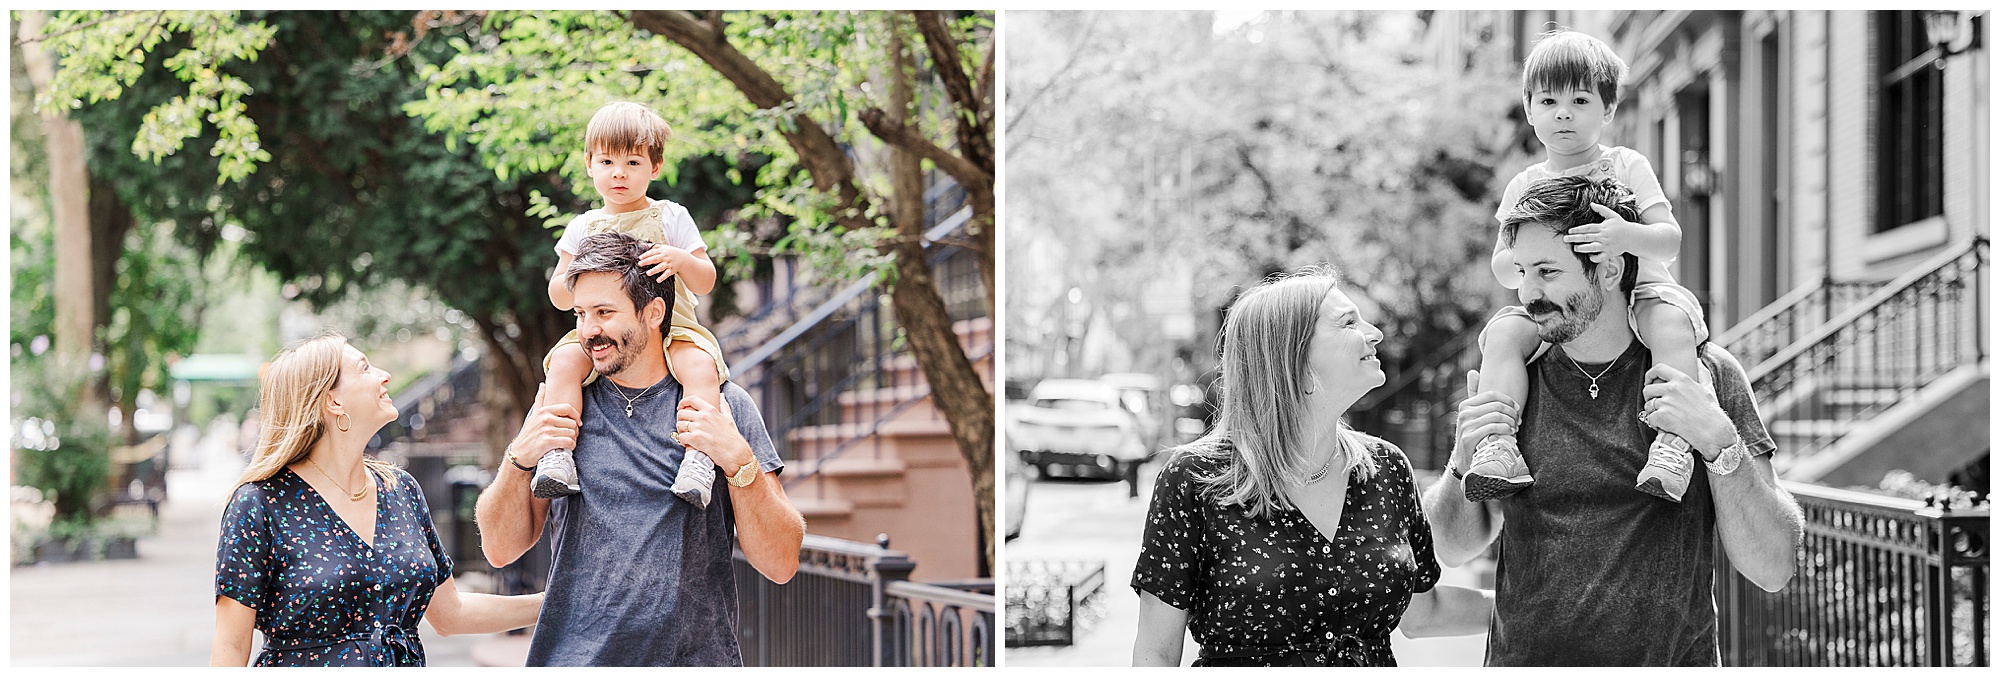 Joyful family photo shoot in Brooklyn Heights